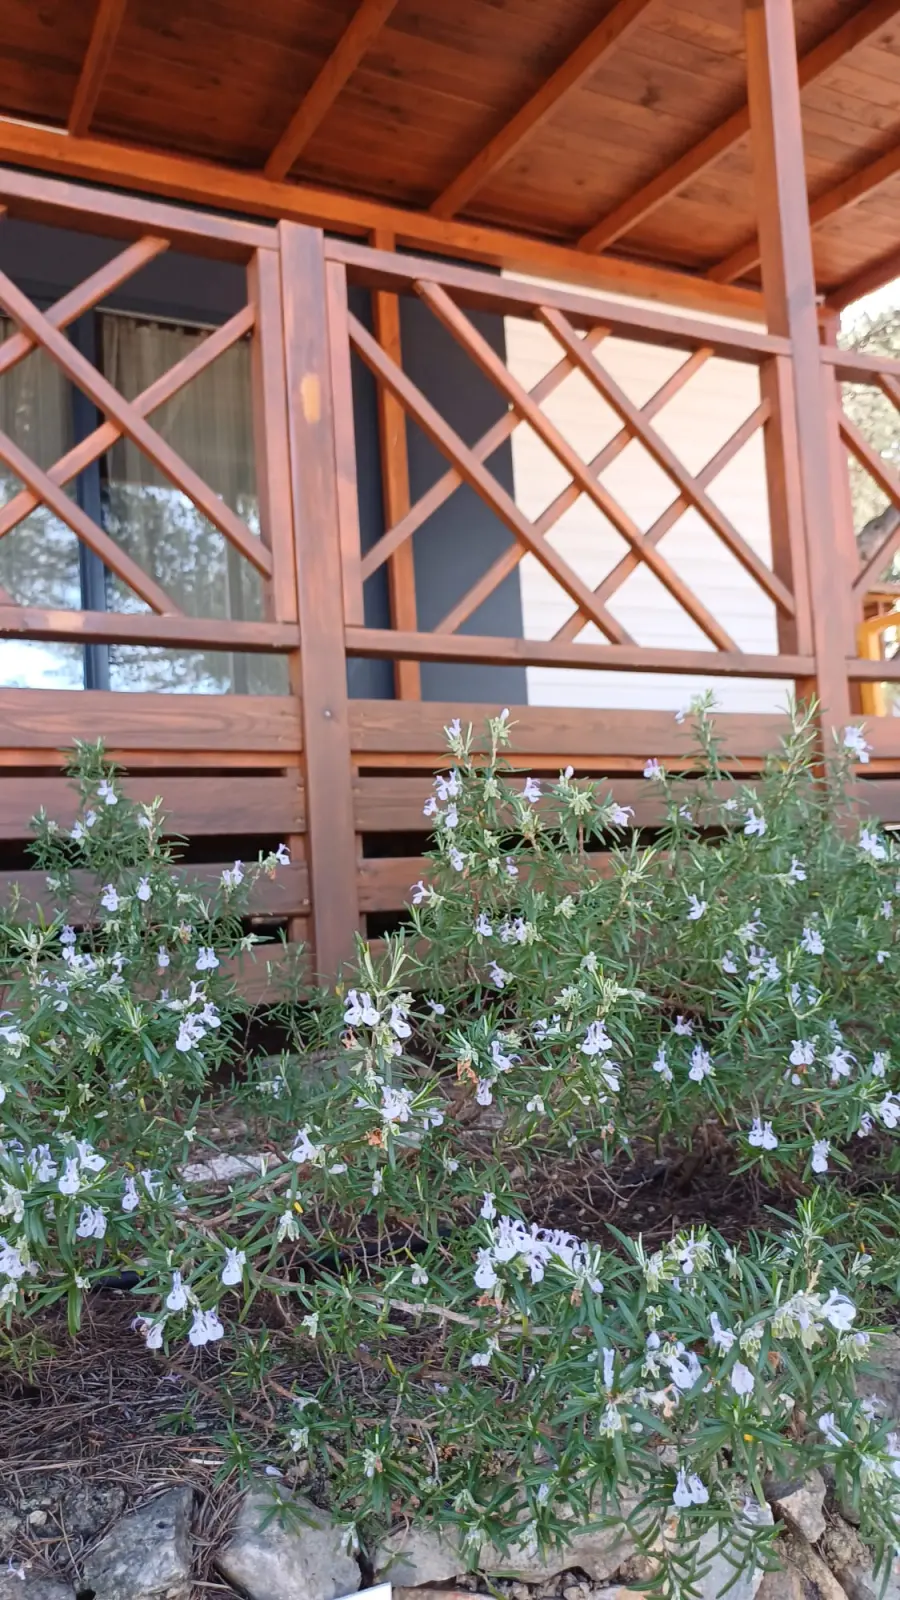 Rosmarinstrauch vor einem Wohnmobil.  Der Rosmarinstrauch hat grüne, nadelartige Blätter und kleine blaue Blüten.